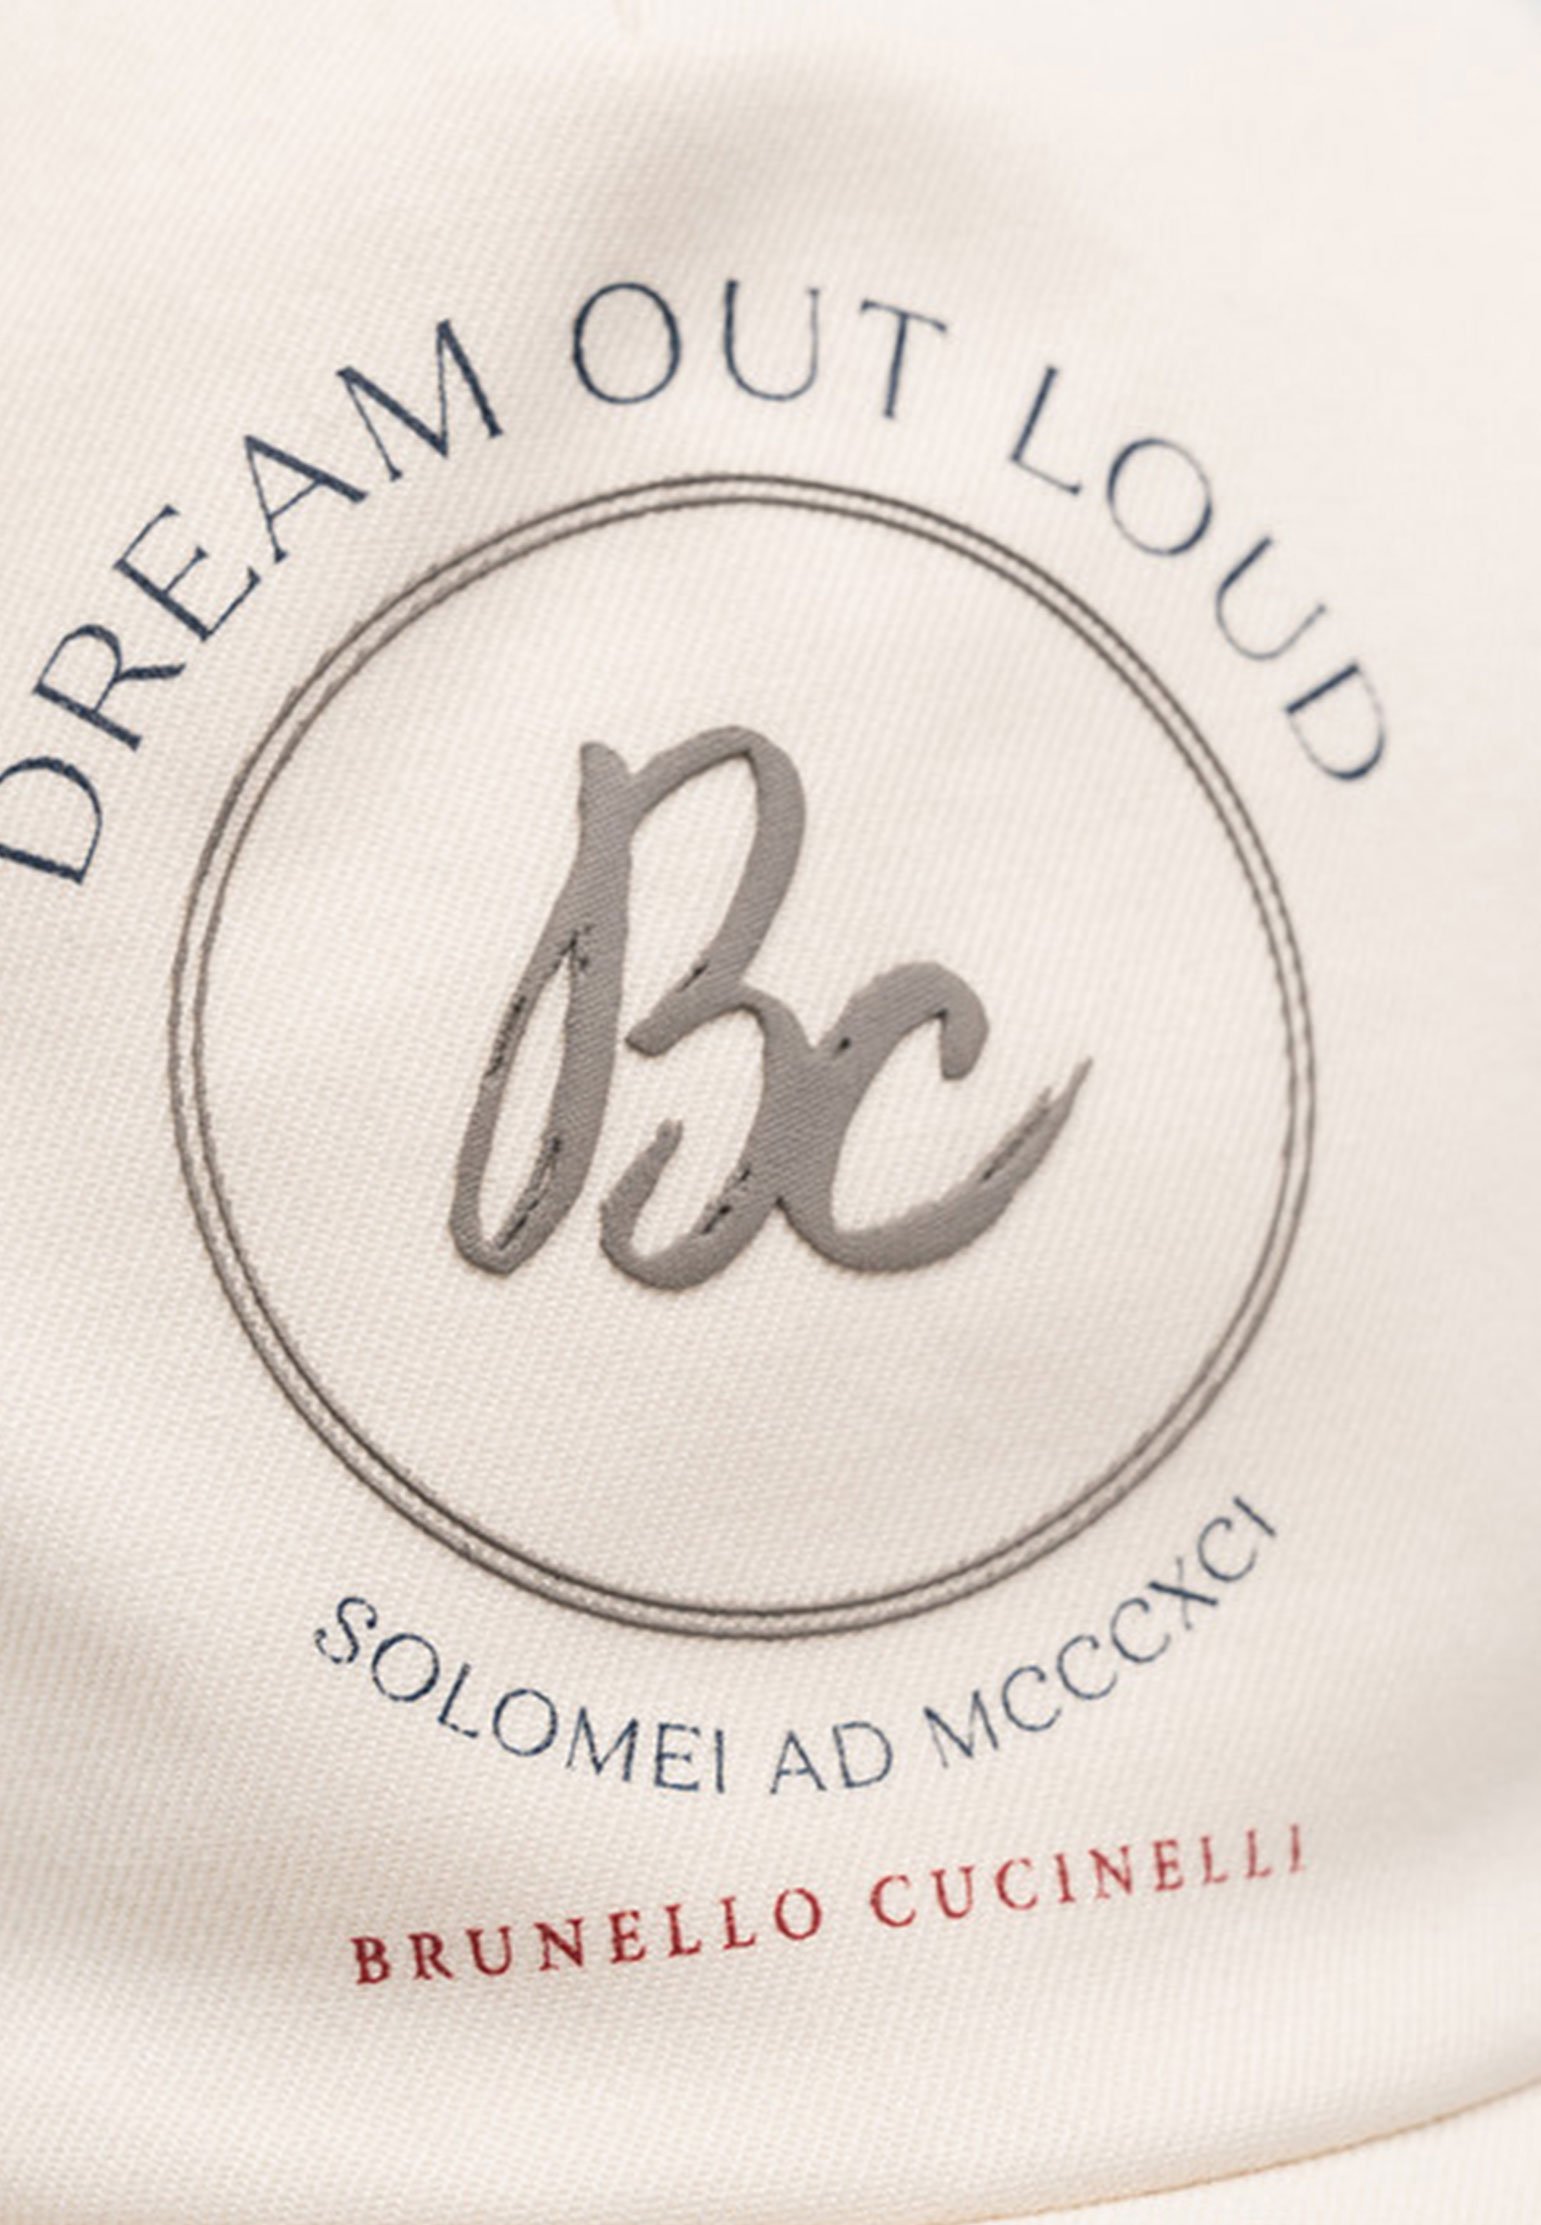 Bonnet BRUNELLO CUCINELLI Color: white (Code: 1525) in online store Allure